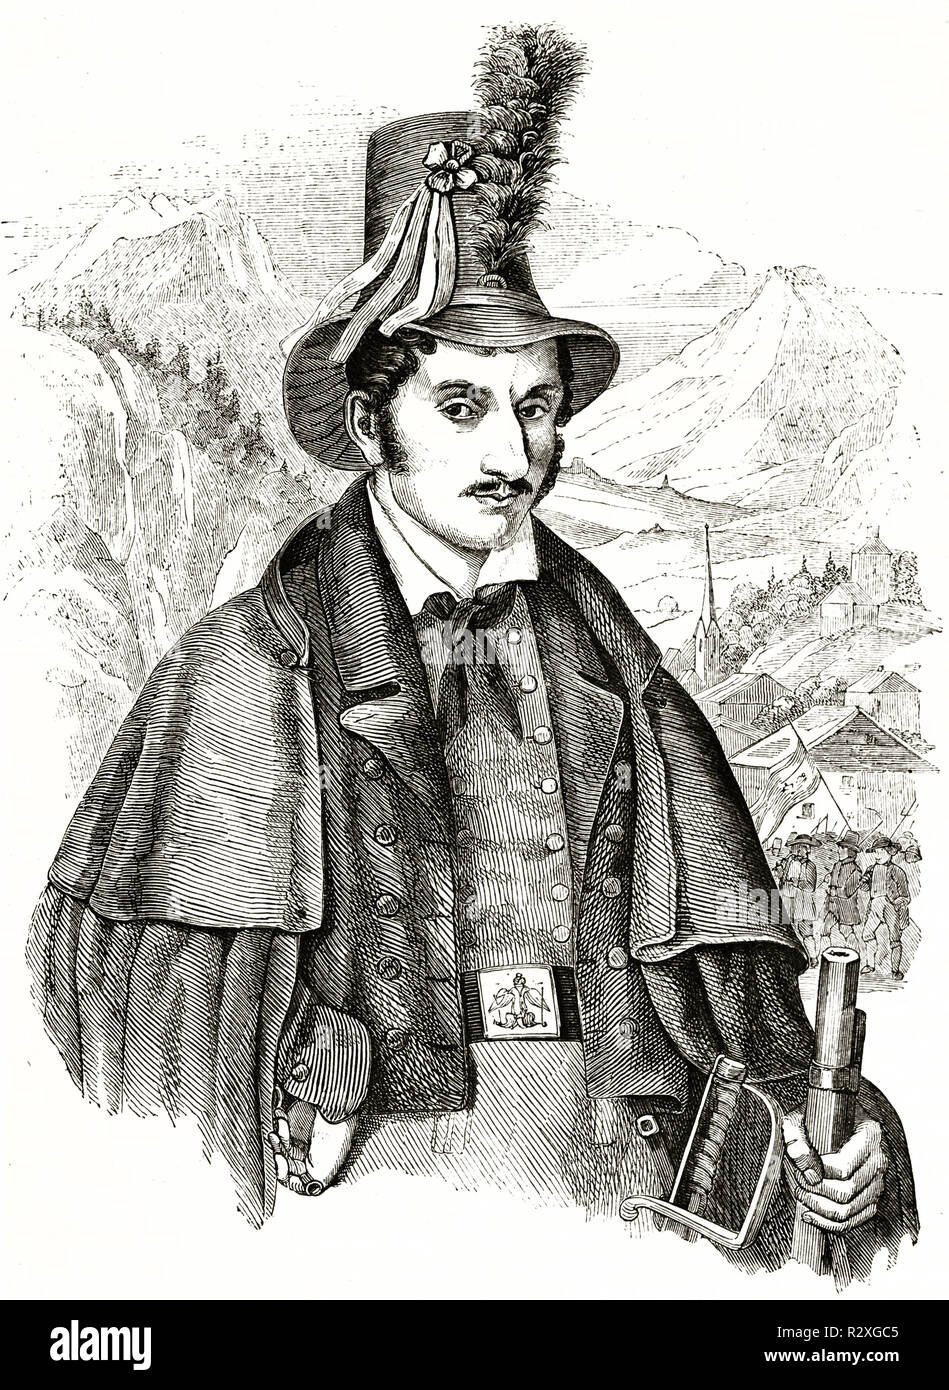 Portrait von Josef Speckbacher (1767-1820), Anführer im Aufstand der Tiroler gegen Napoleon. Publ. Auf Magasin Pittoresque, Paris, 1846 Stockfoto